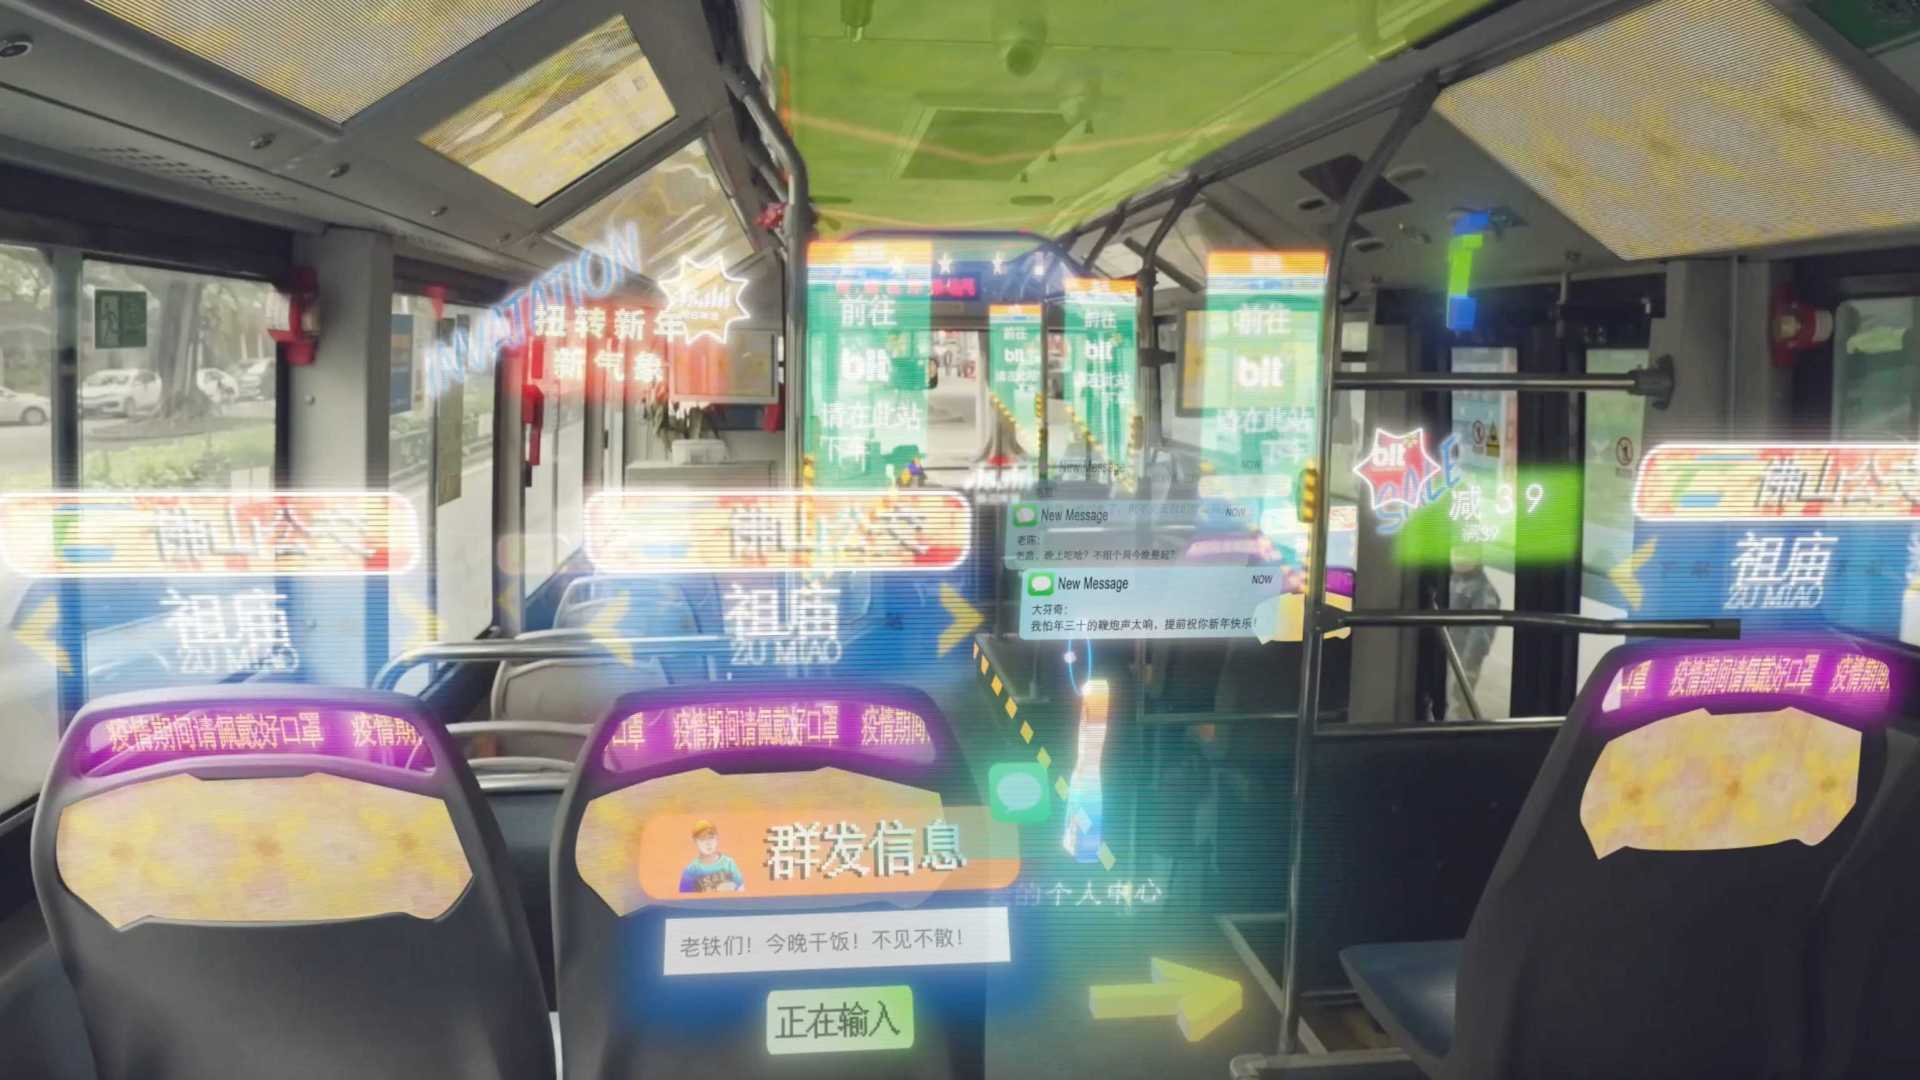 看见未来计划｜当元宇宙与现实结合｜坐个公车逛个超市